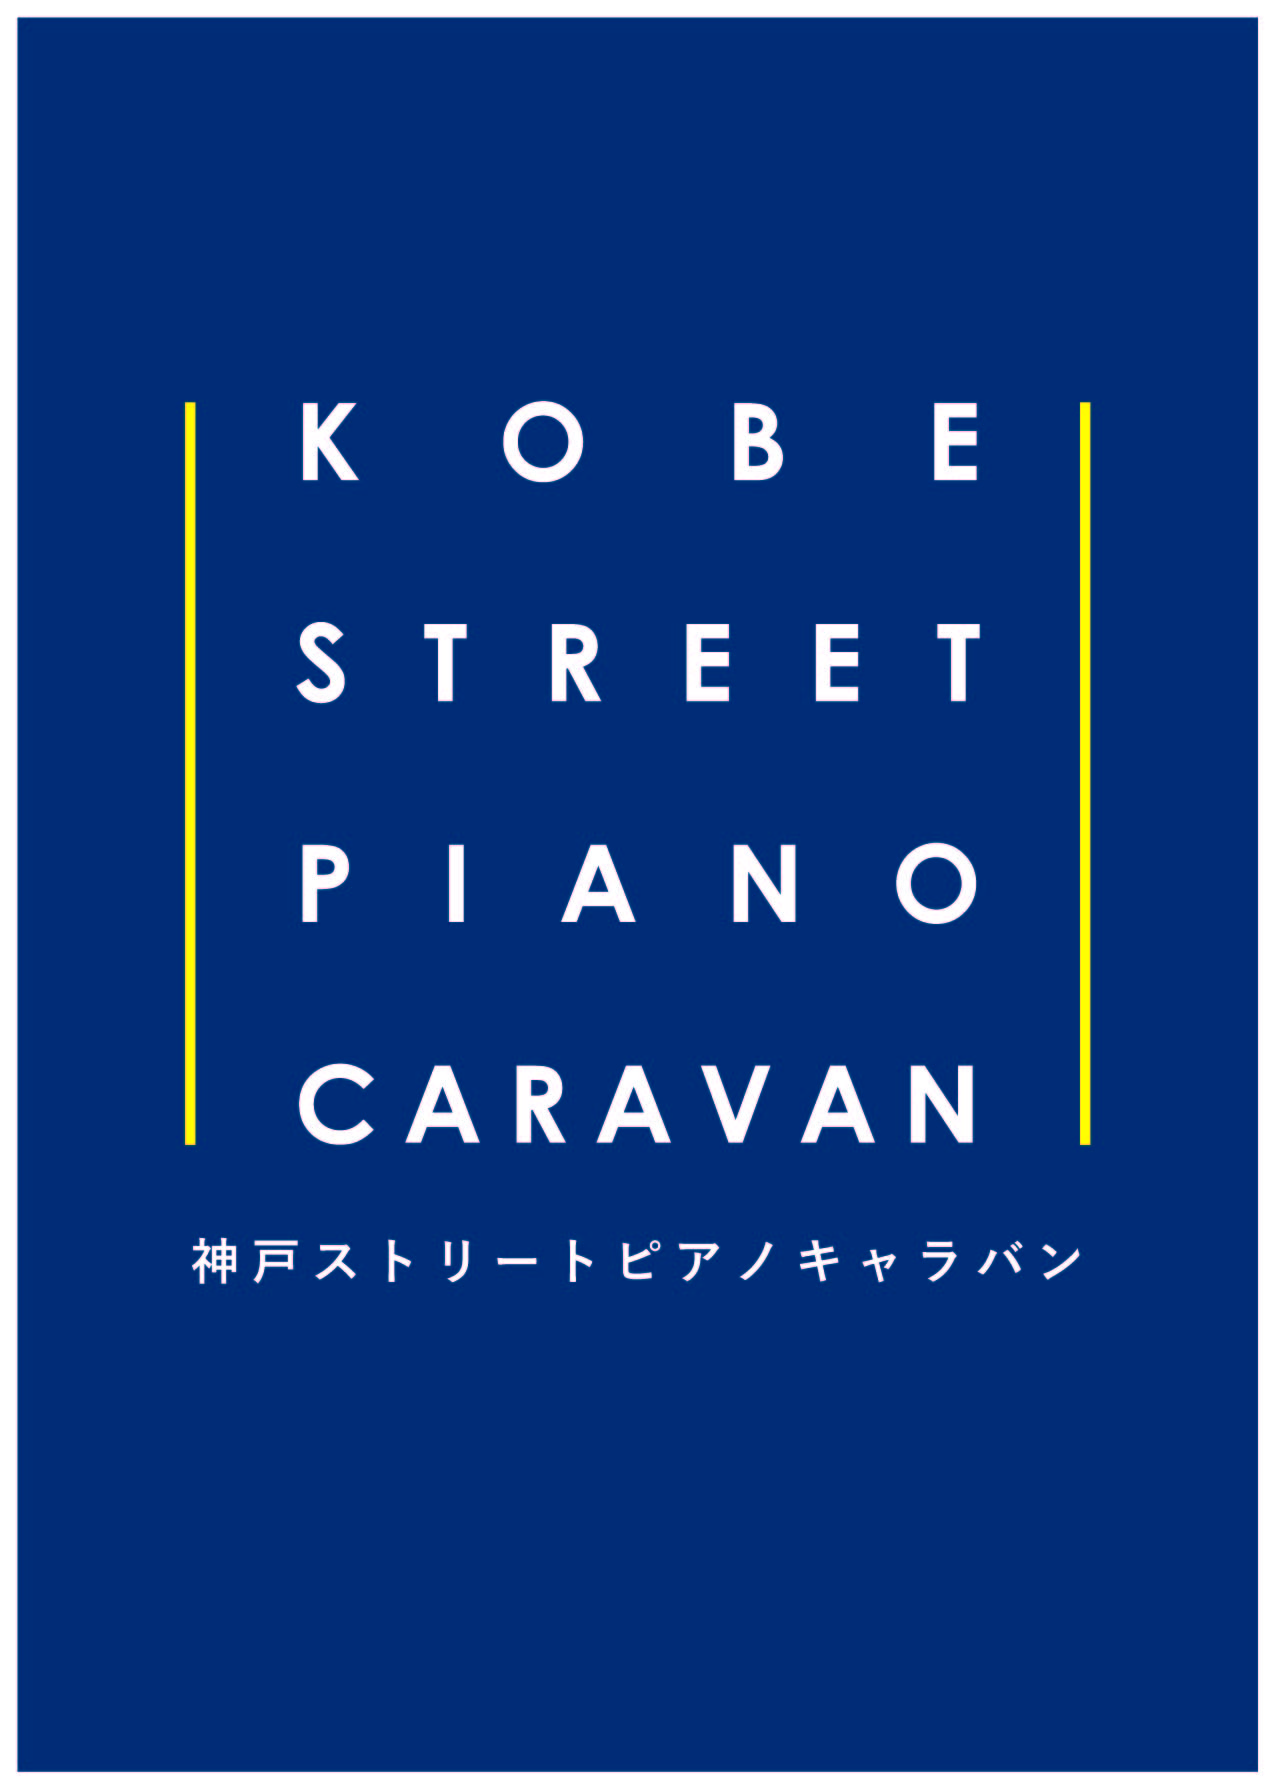 Kobe ストリートピアノキャラバン Vol 1 公益財団法人 神戸市民文化振興財団事業部演奏課